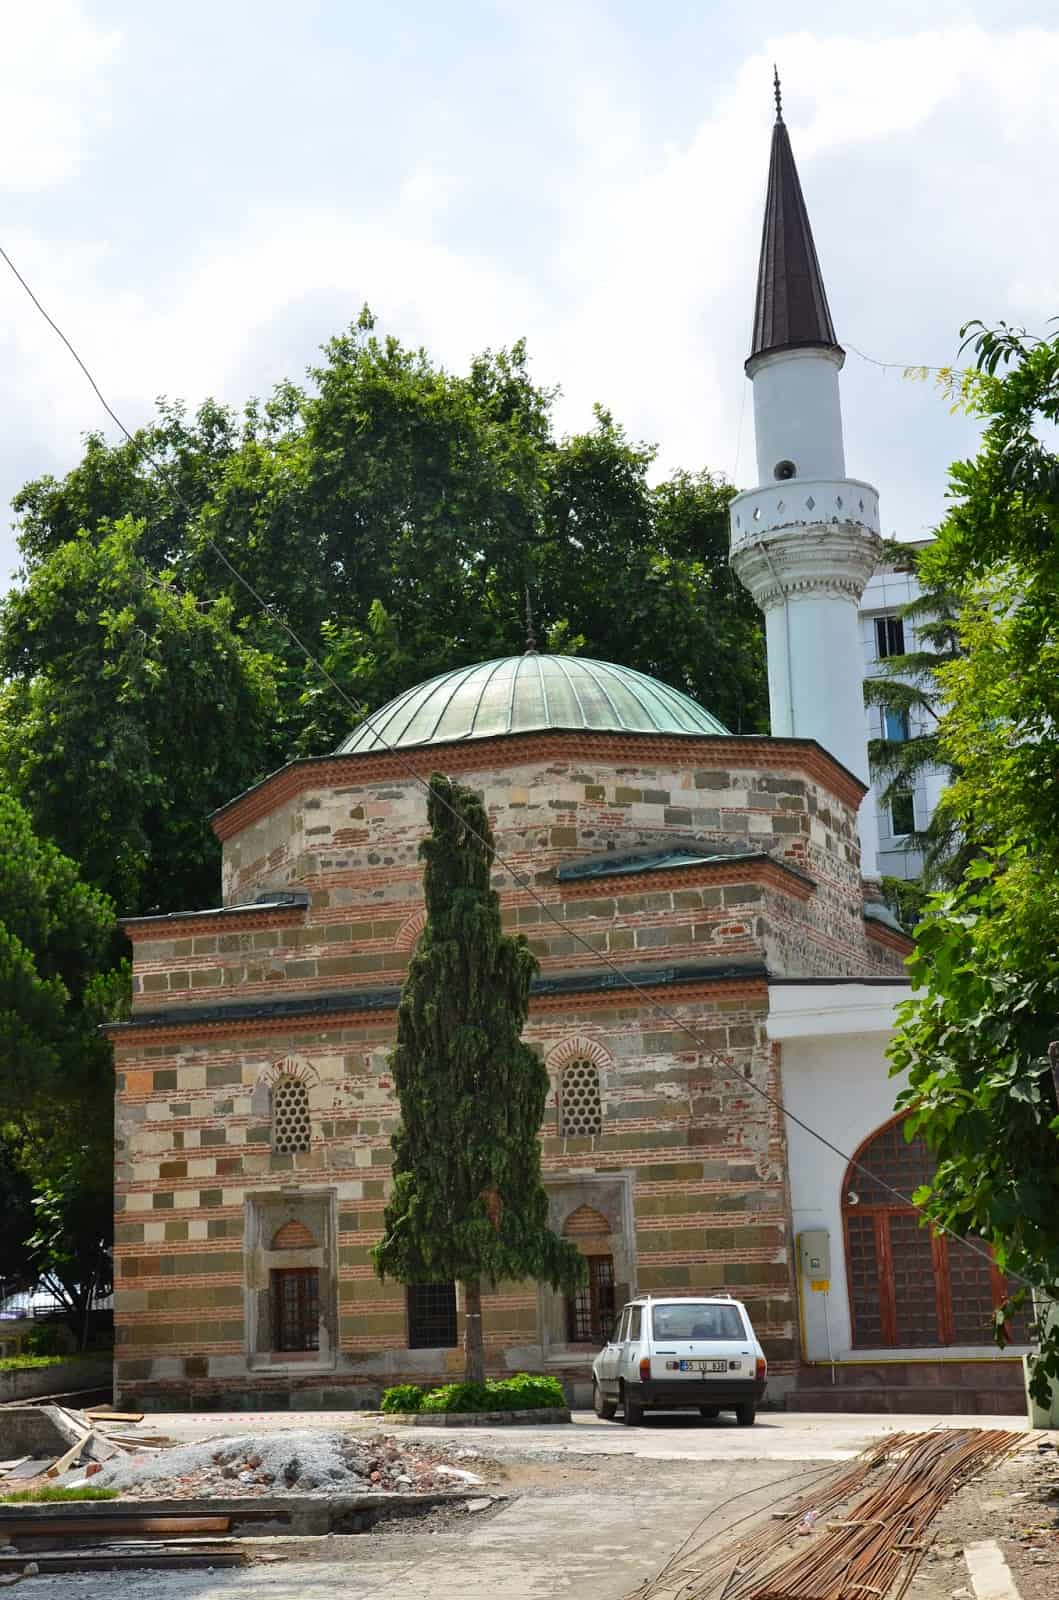 Yalı Mosque in Samsun, Turkey